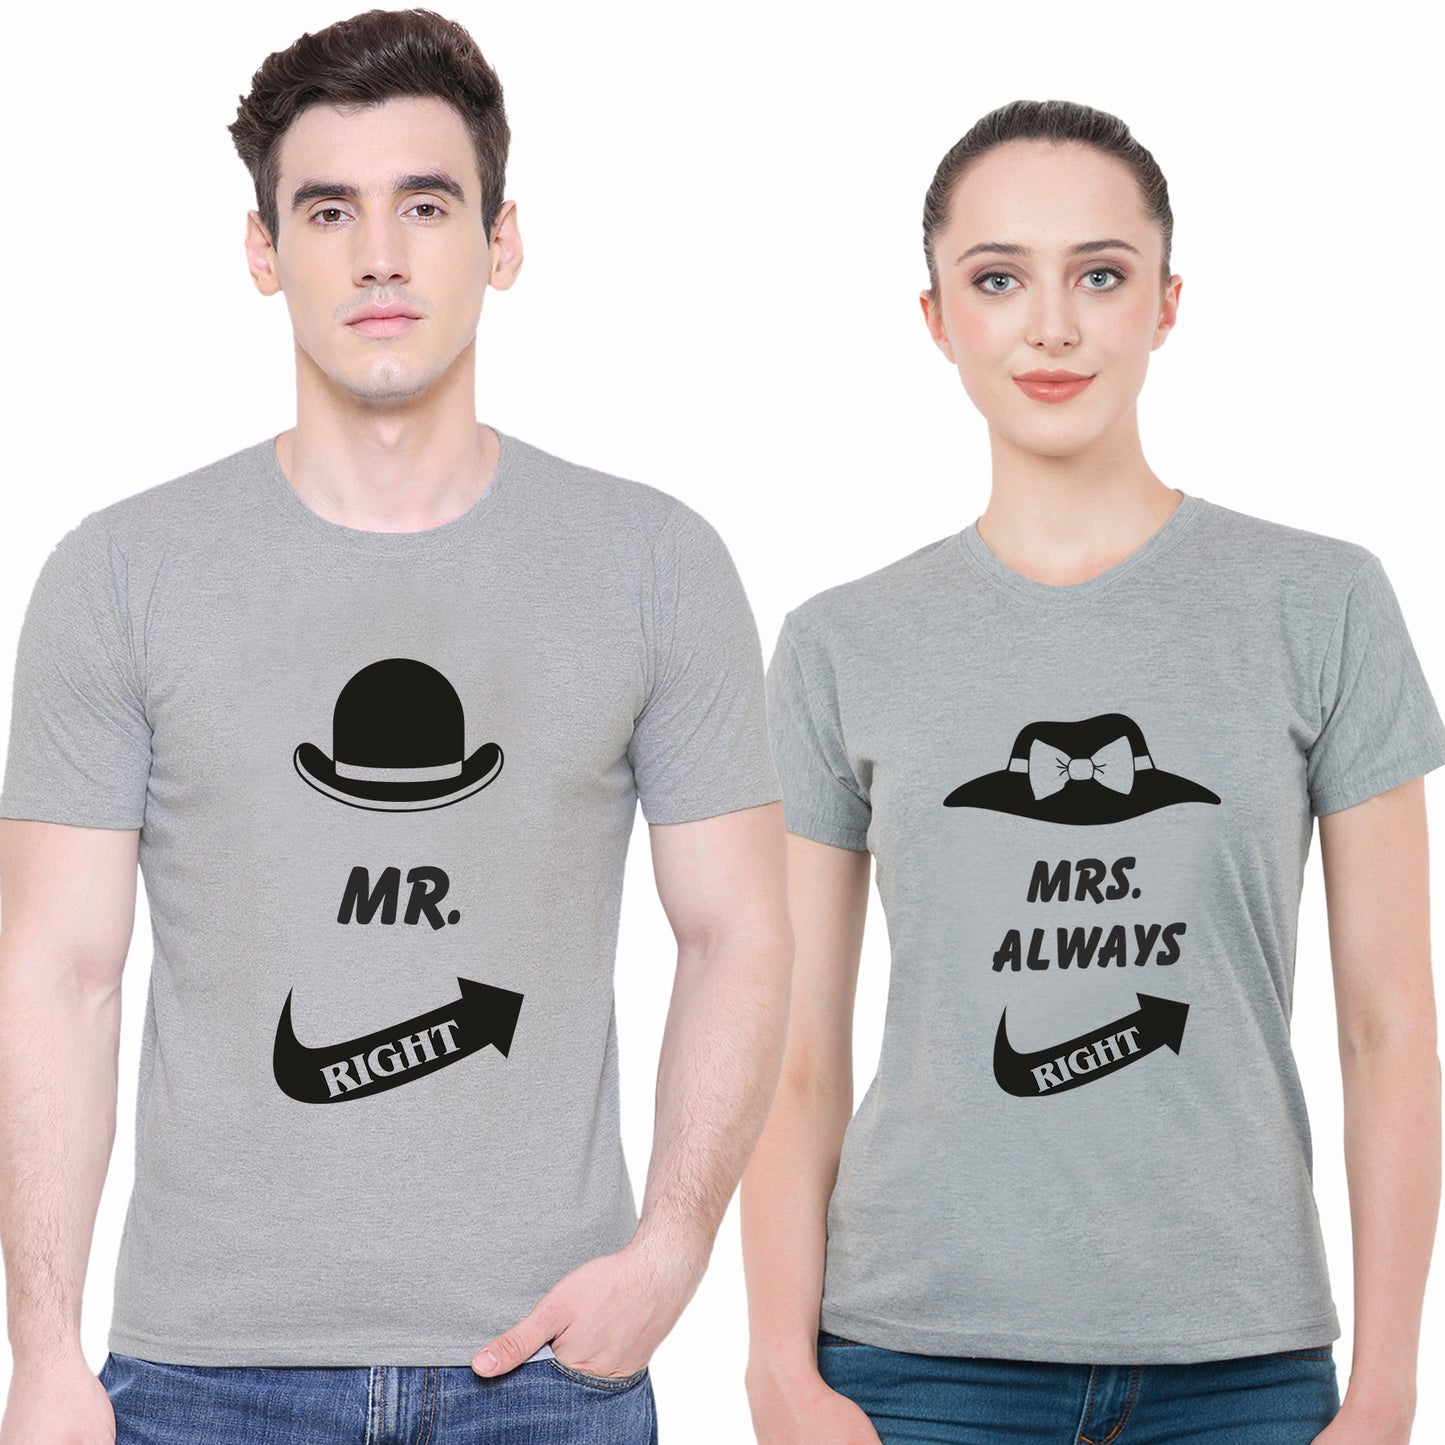 Mr. & Mrs. Right matching Couple T shirts- Grey